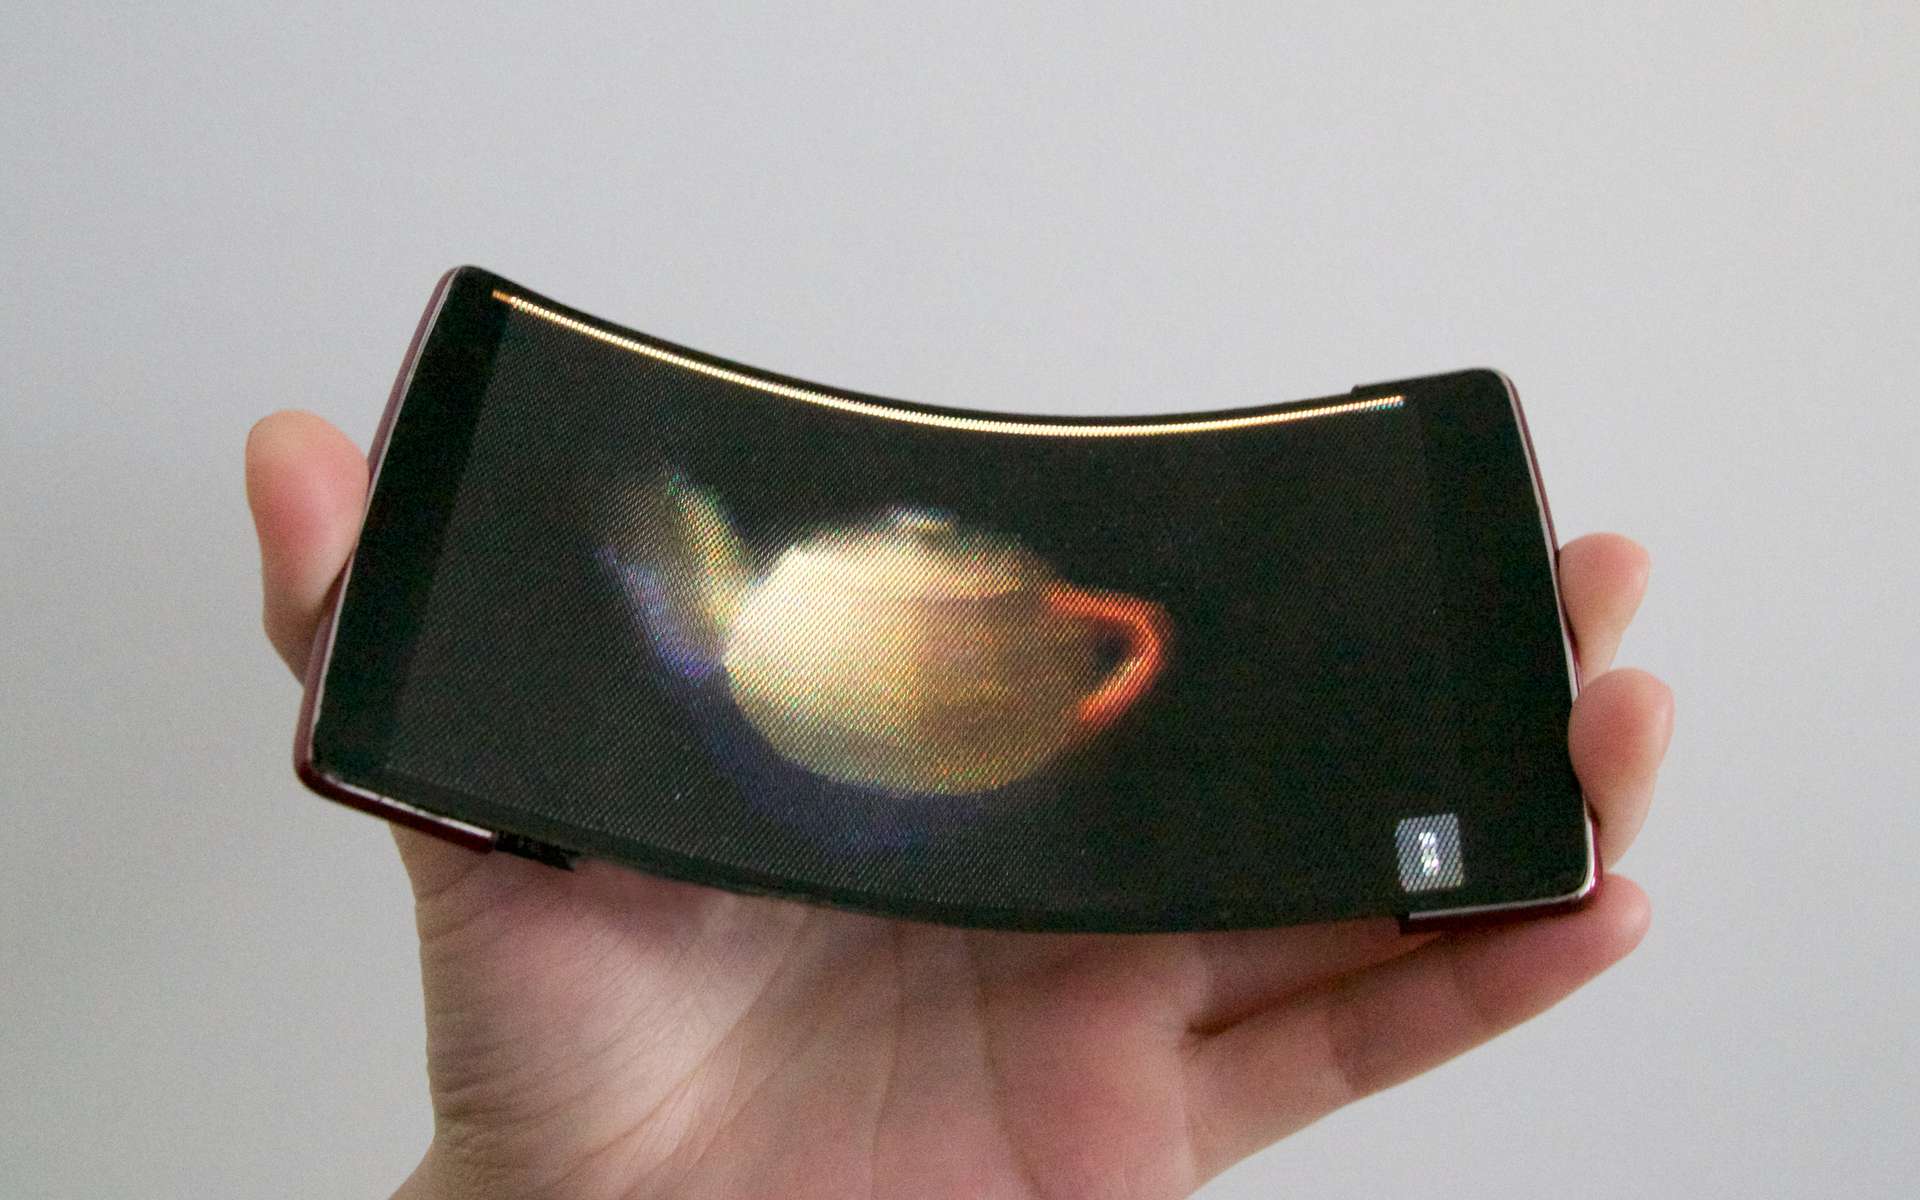 Le concept d’écran flexible holographique de l'HoloFlex permet notamment de manipuler des objets en 3D pour les observer sous tous les angles. © Queen’s university, Human Media Lab